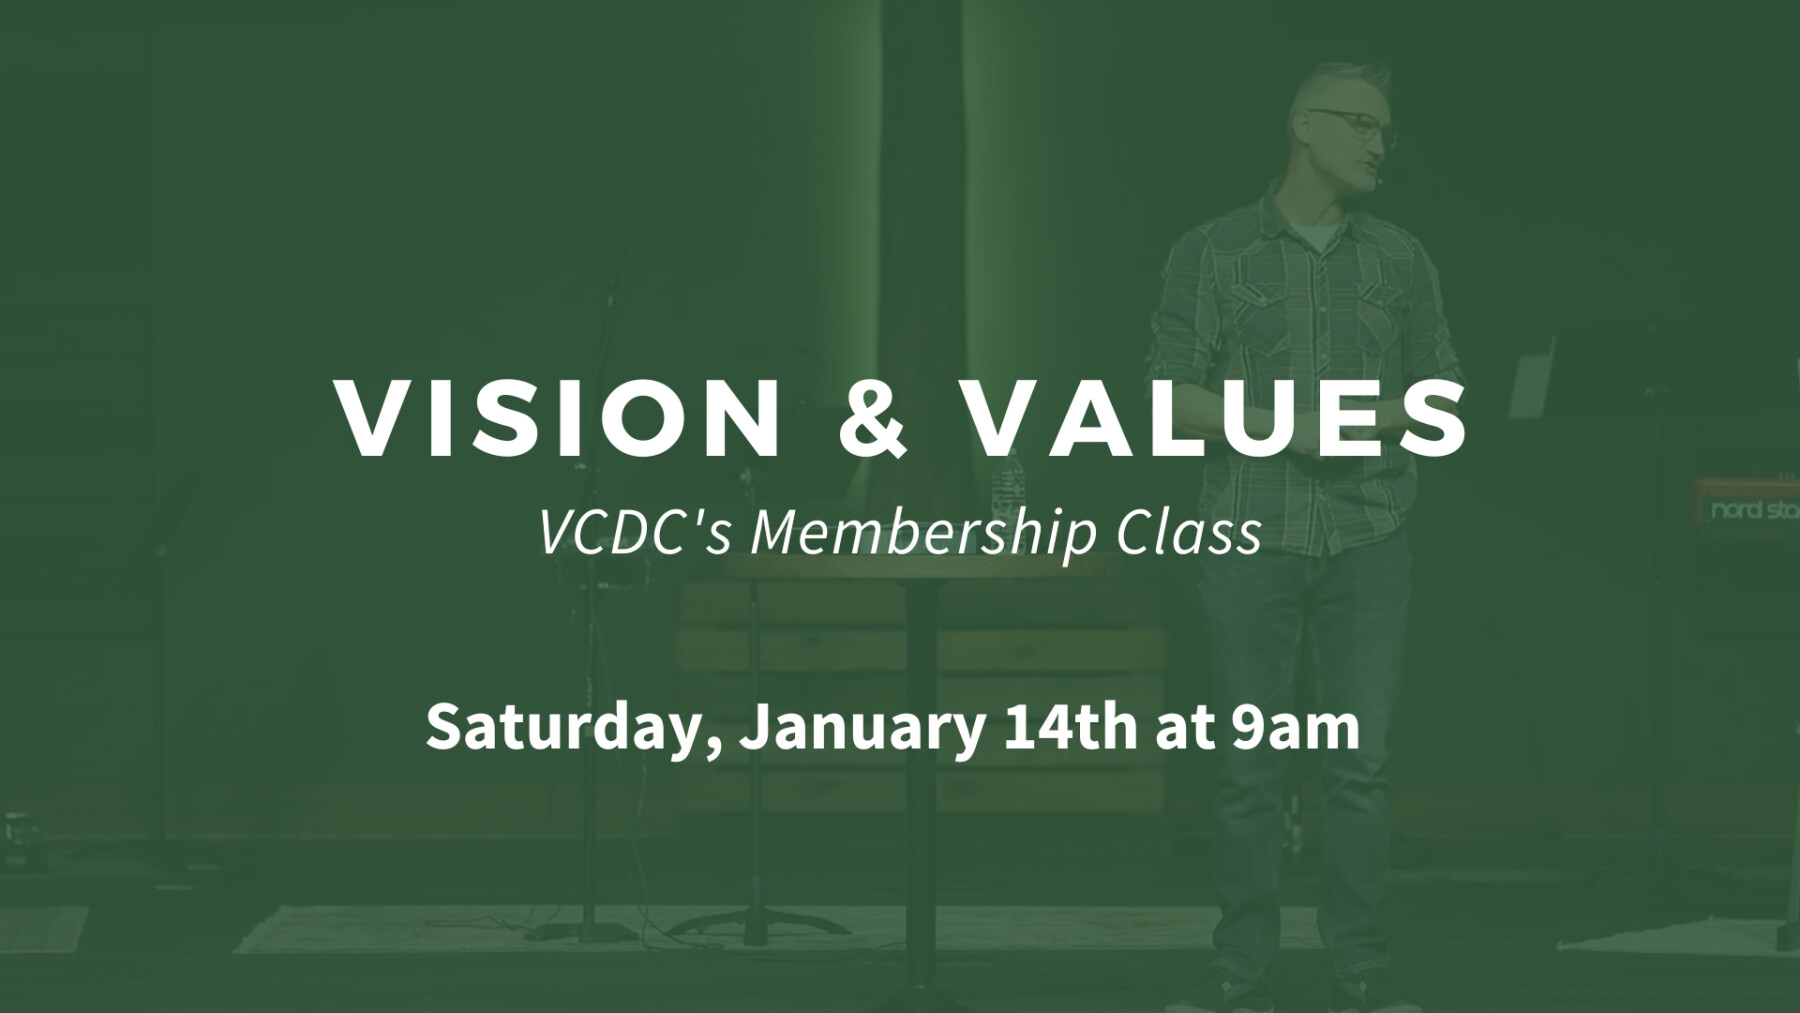 Vision & Values - Saturday, January 14th at 9am